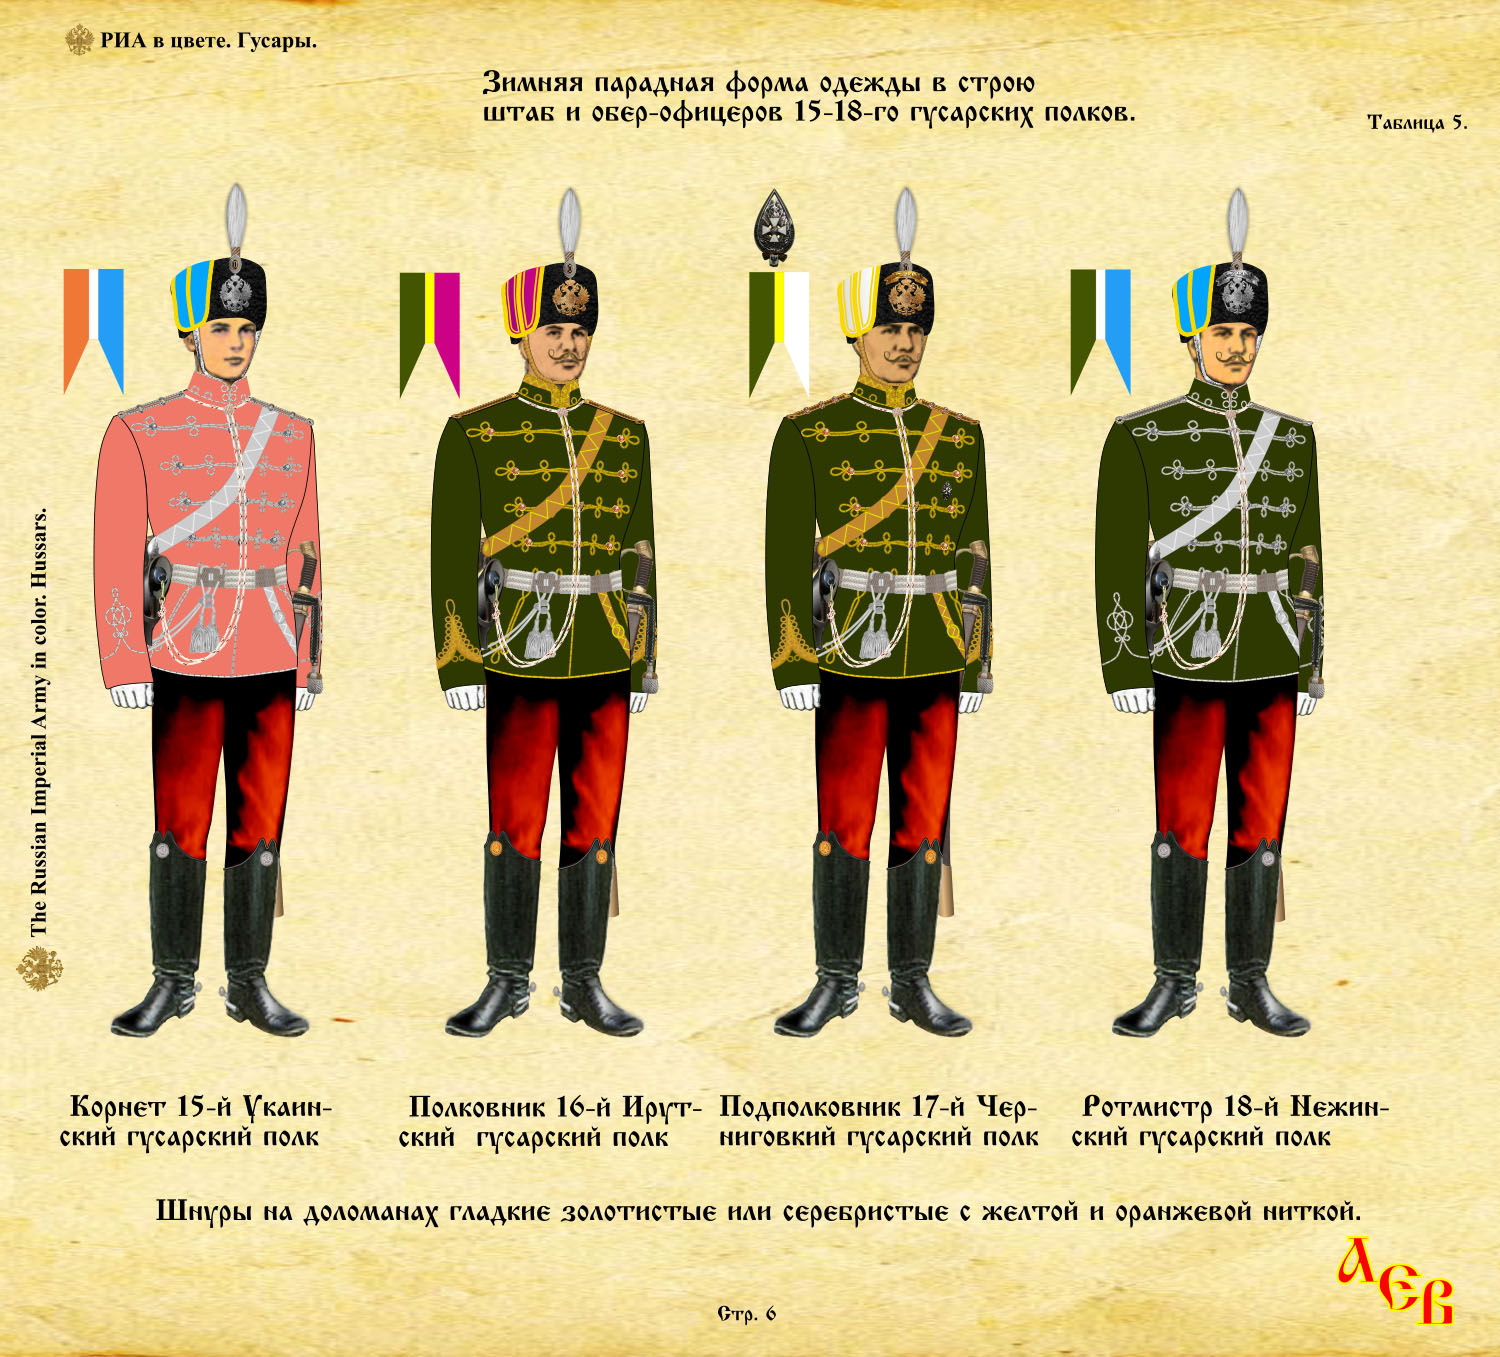 цвета гусарских полков в 1812